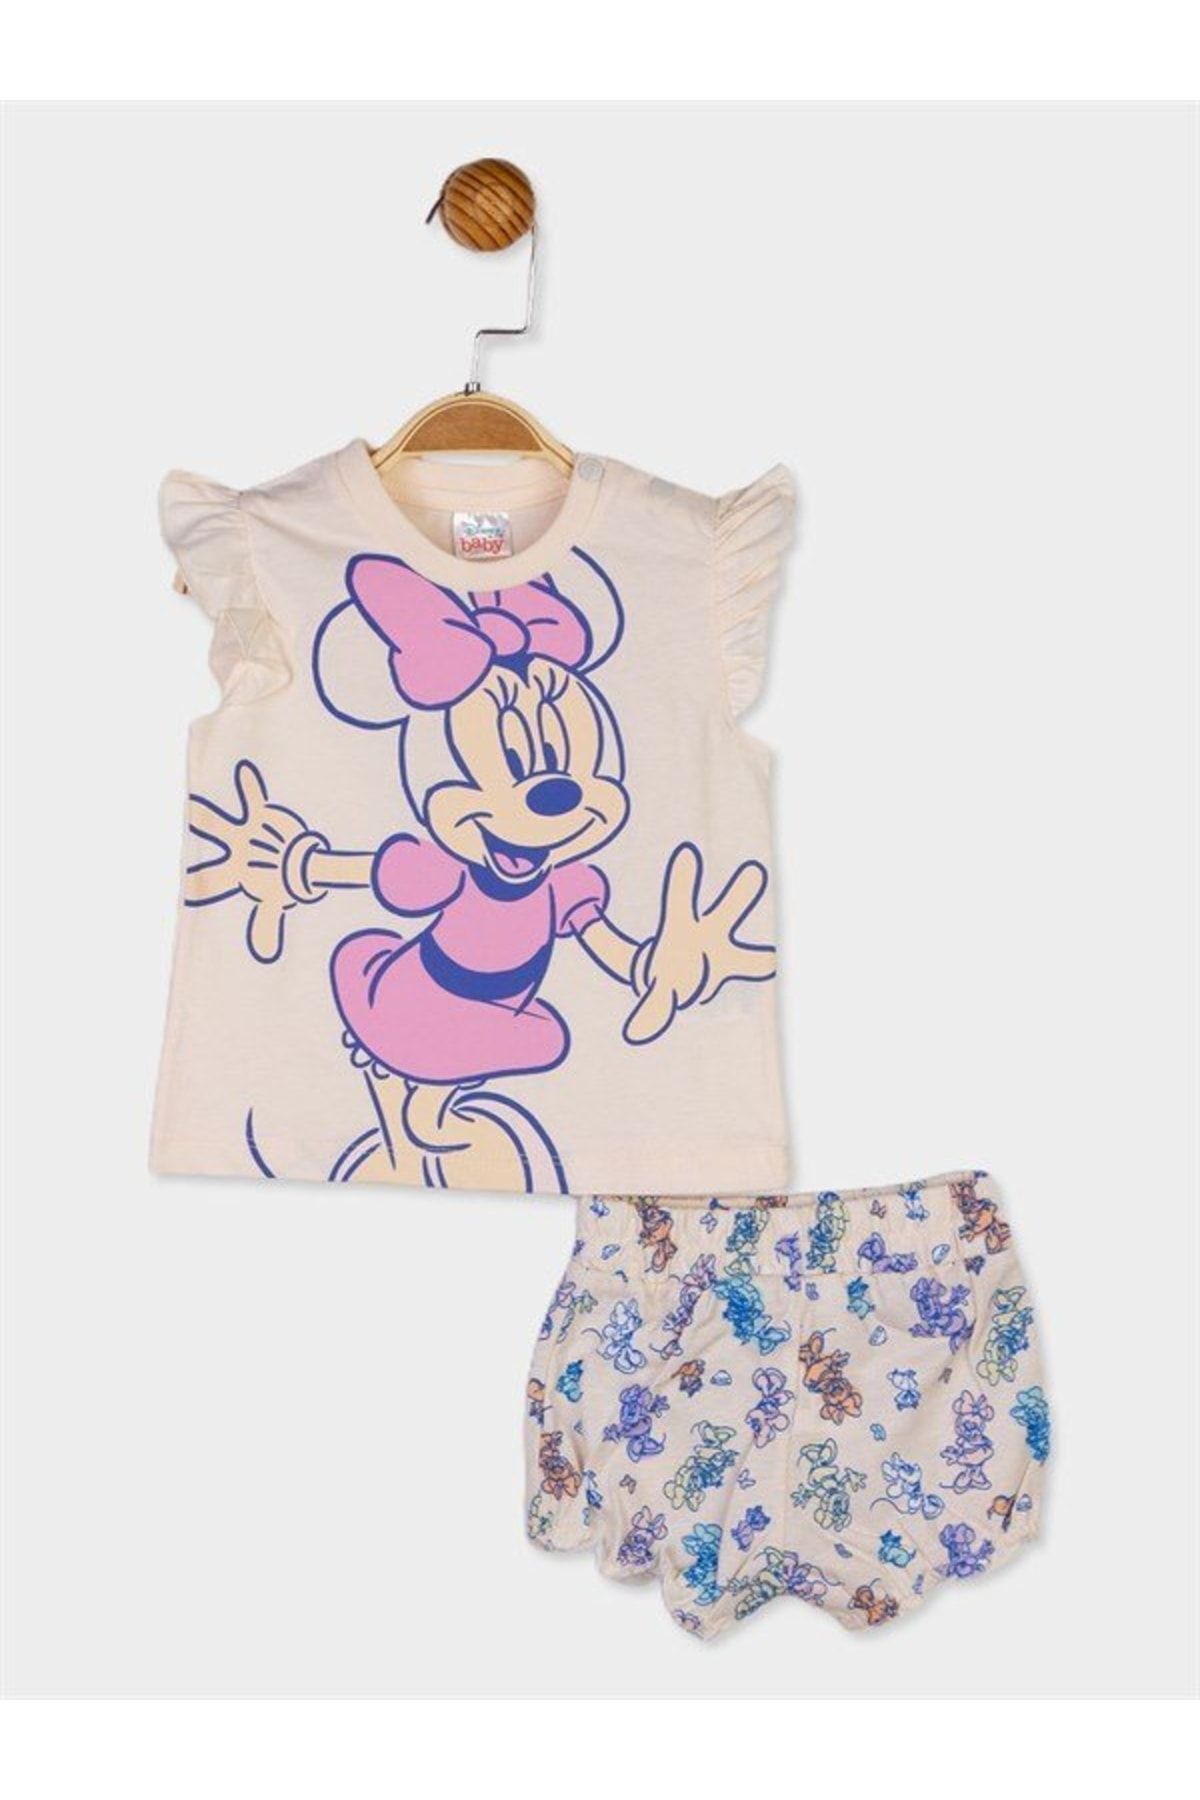 DİSNEY Minnie Mouse Lisanslı Kız Bebek Tişört Ve Şort 2'li Takım